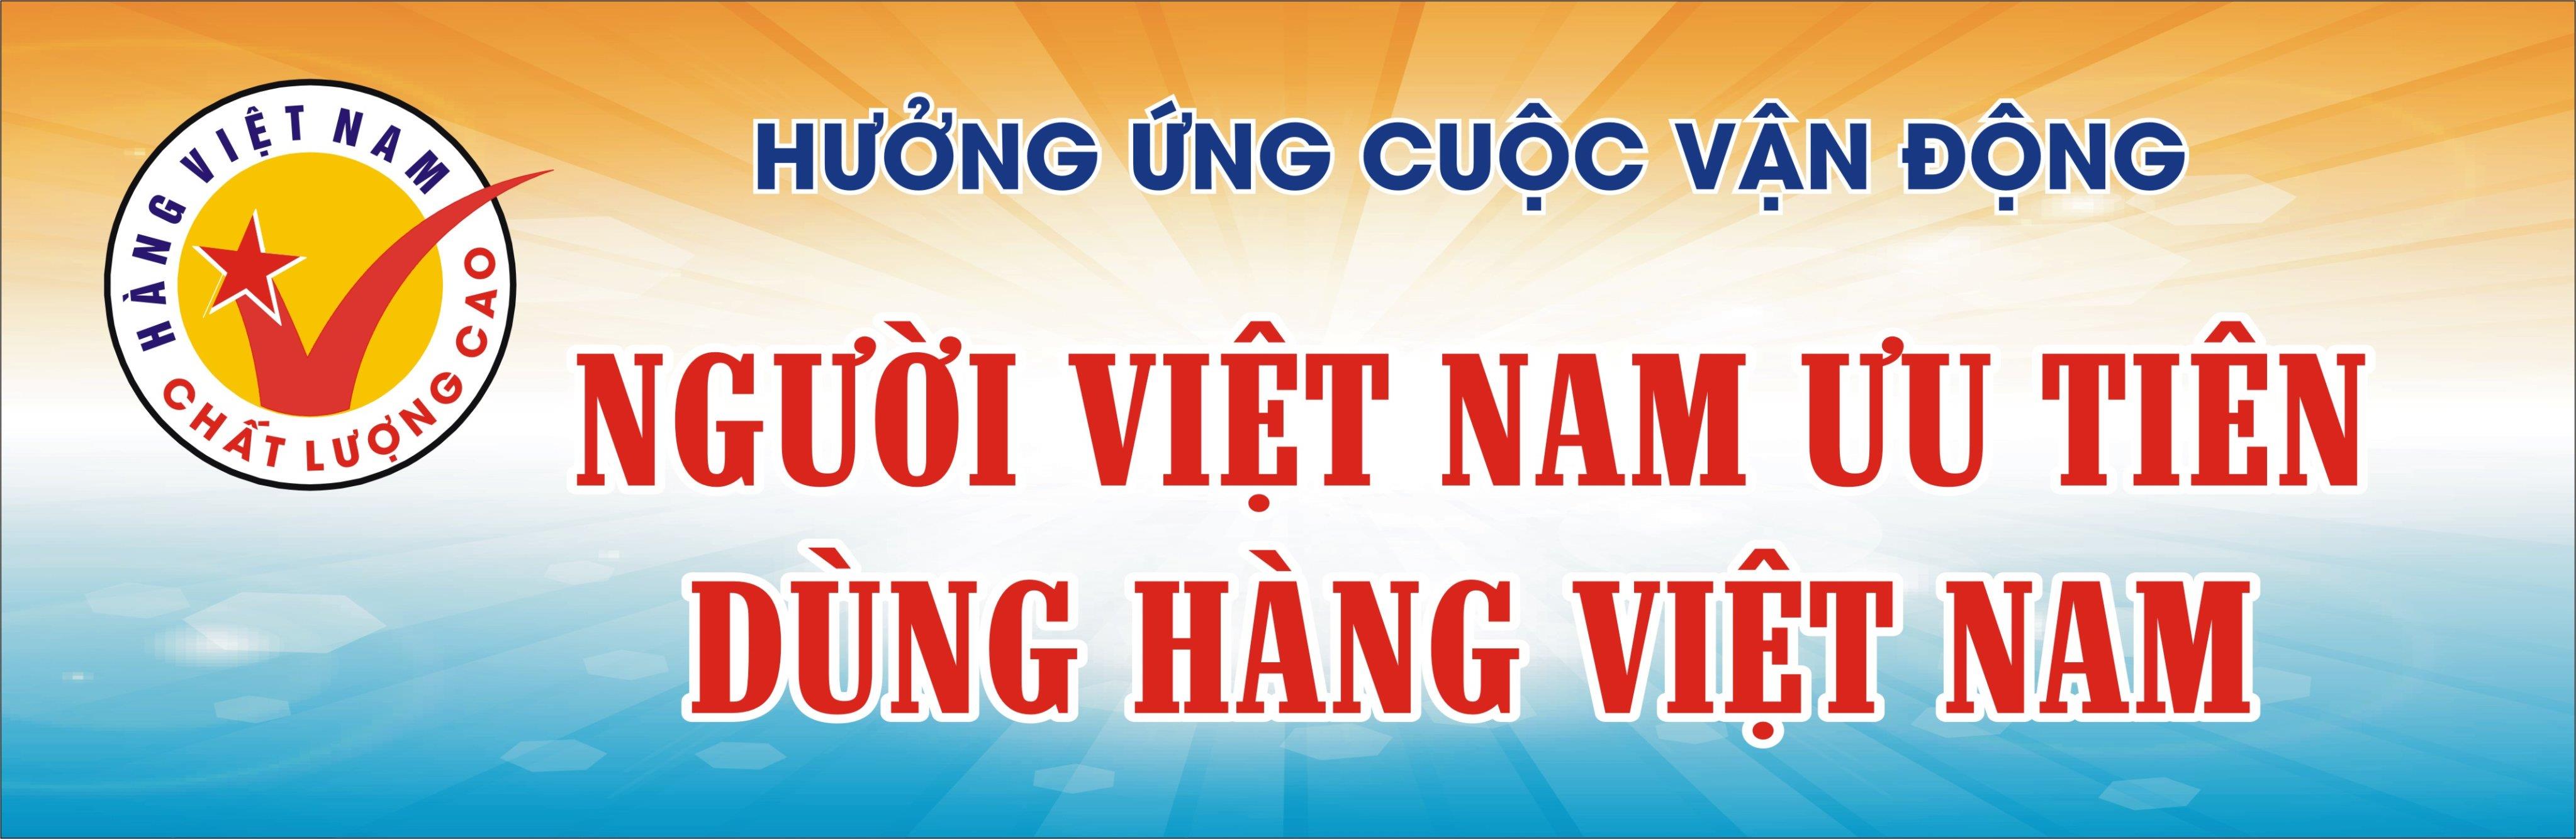 Ban Chỉ đạo Cuộc vận động tỉnh Bắc Giang xây dựng Kế hoạch tổ chức Tháng cao điểm thực hiện Cuộc vận động “Người Việt Nam ưu tiên dùng hàng Việt Nam” năm 2022